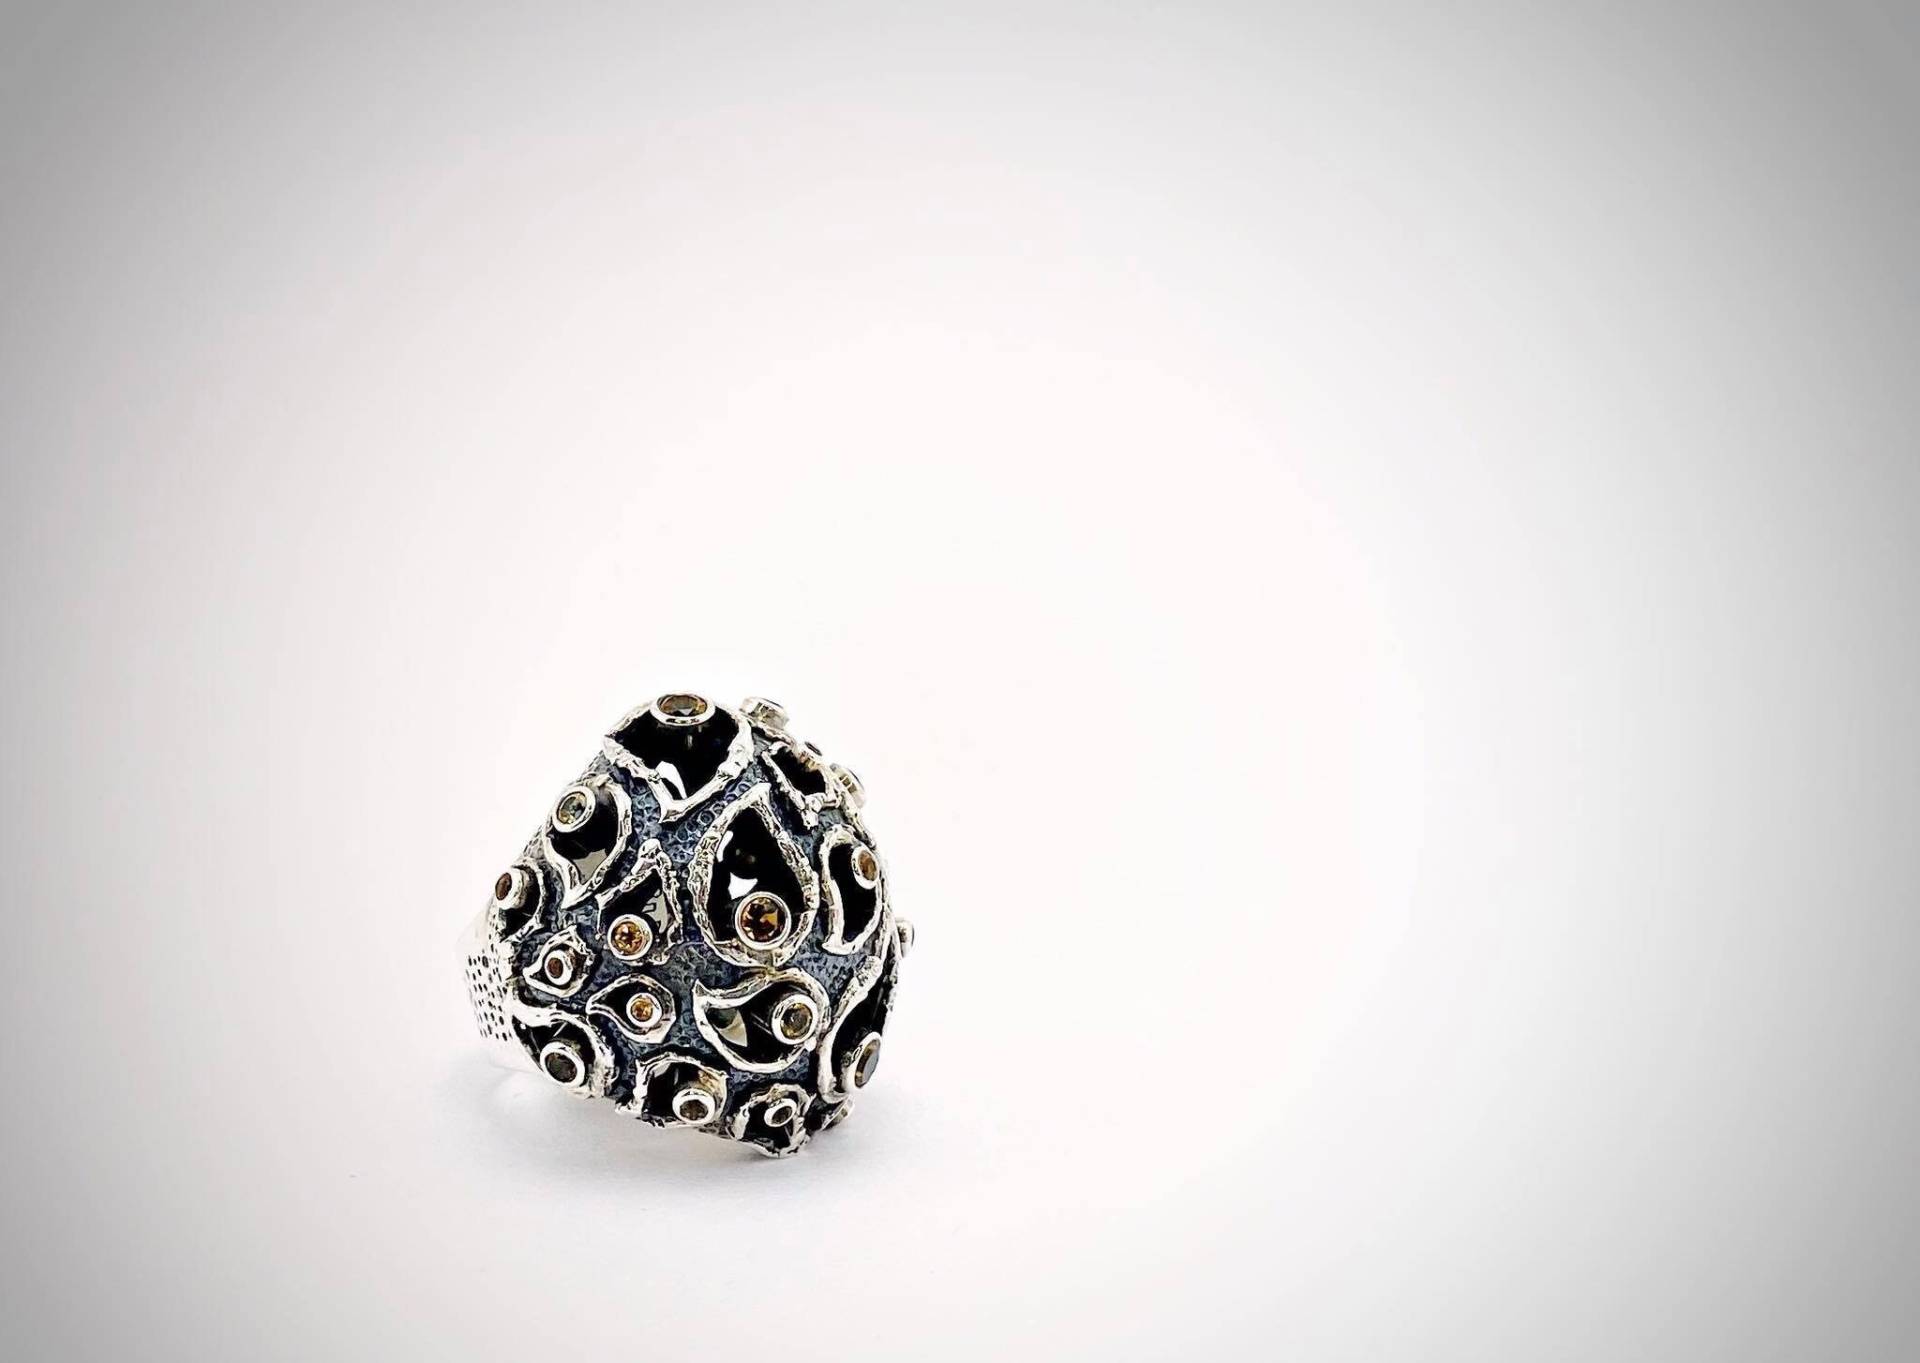 Silber Granat Ring, Gothic Gehirn Cocktail Holes Statement Moderne Gatsby Avantgarde Schmuck, Frau Kunst Geschenk von ArtissimoArtGallery